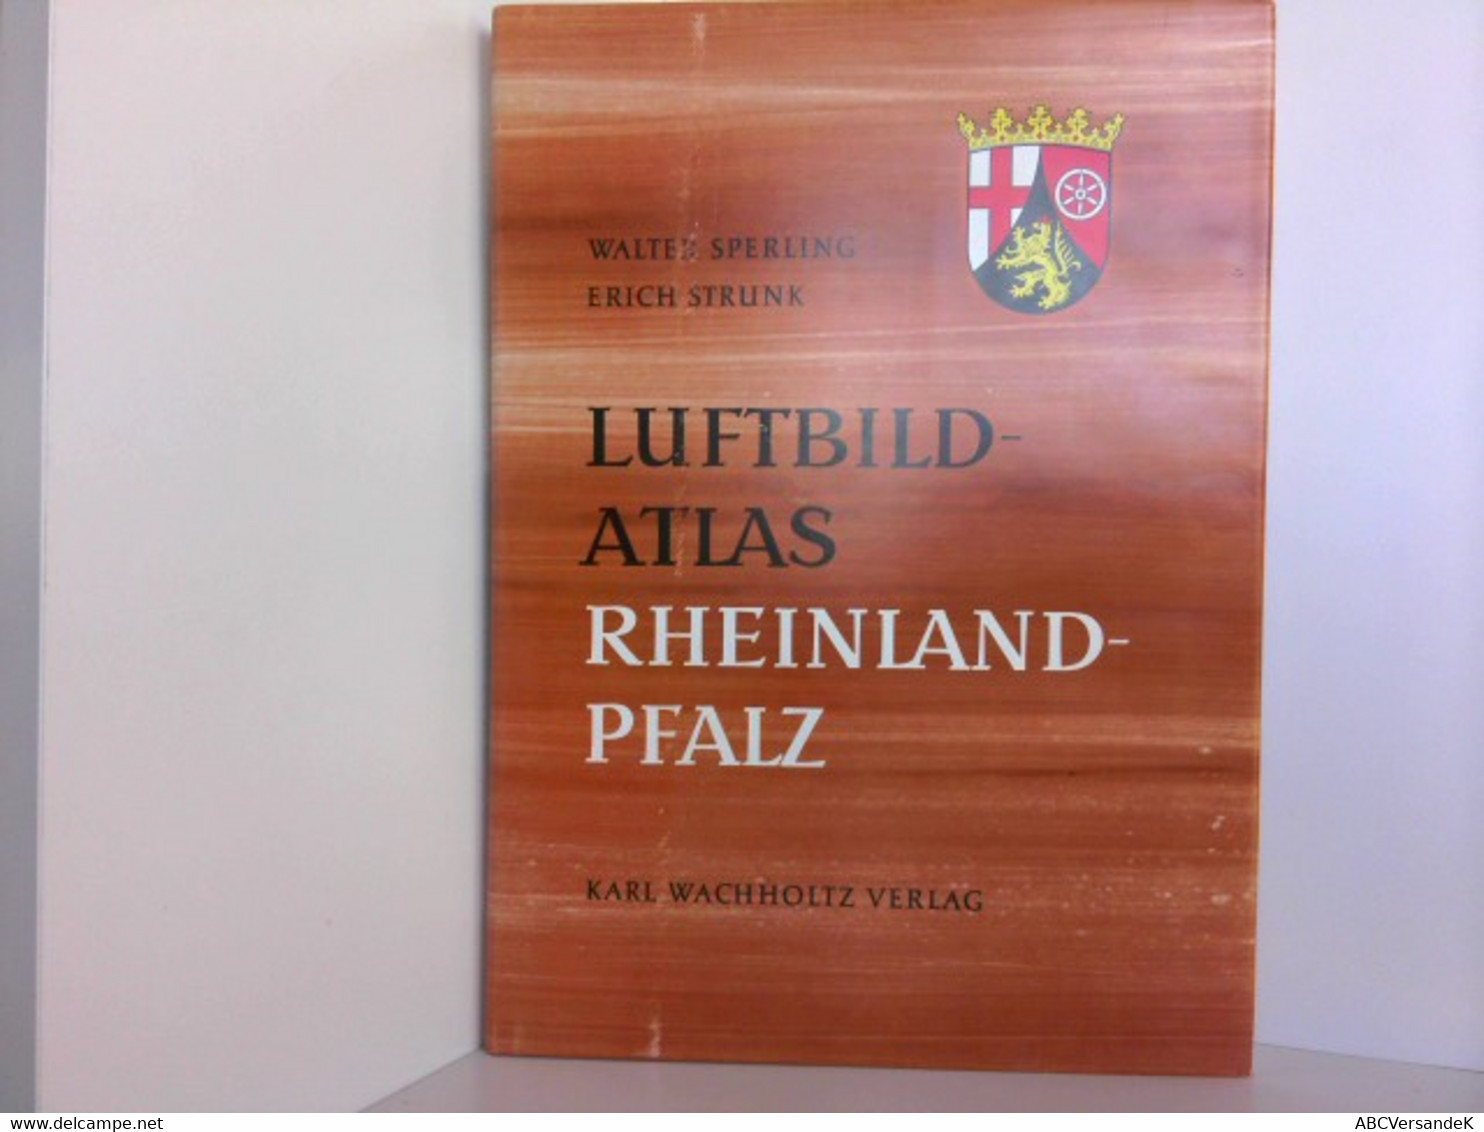 Luftbild-Atlas. Rheinland-Pfalz, Eine Landeskunde - Allemagne (général)